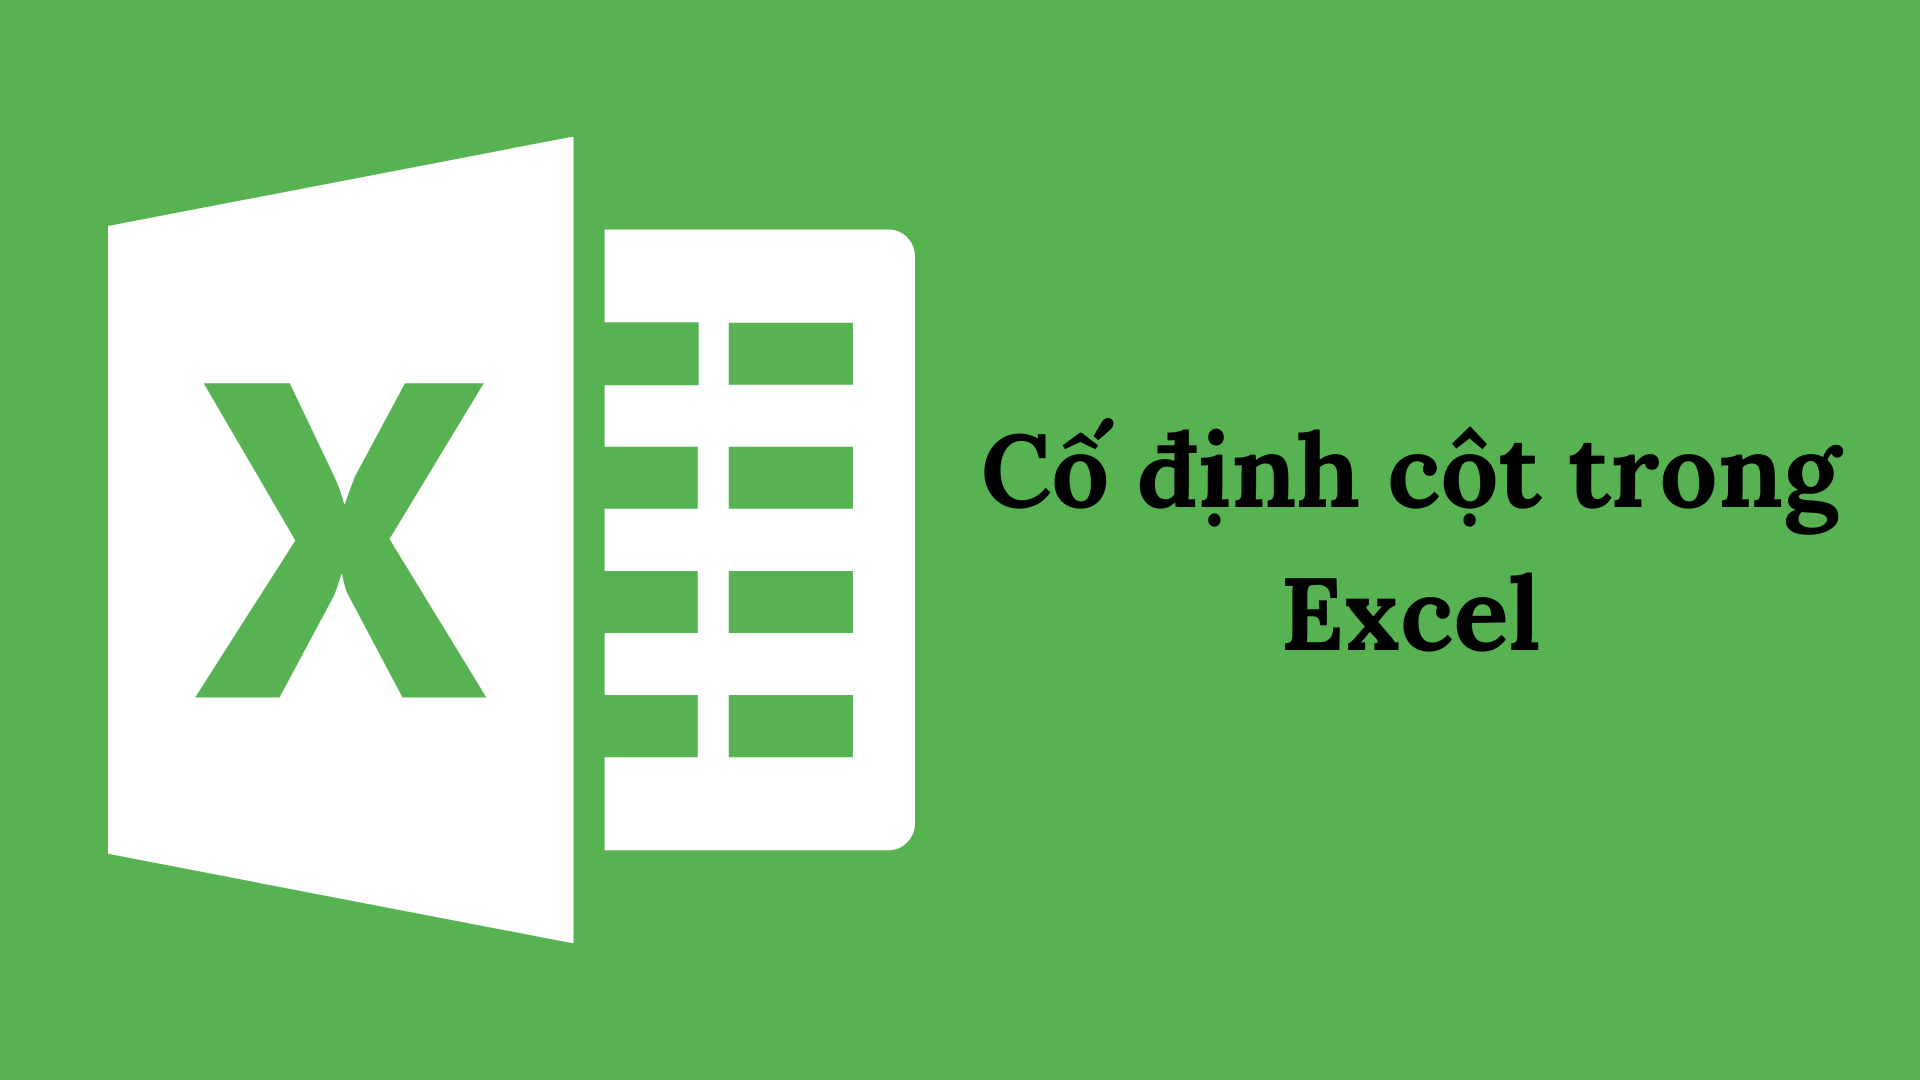 Hướng dẫn cách cố định cột trong Excel đơn giản nhất